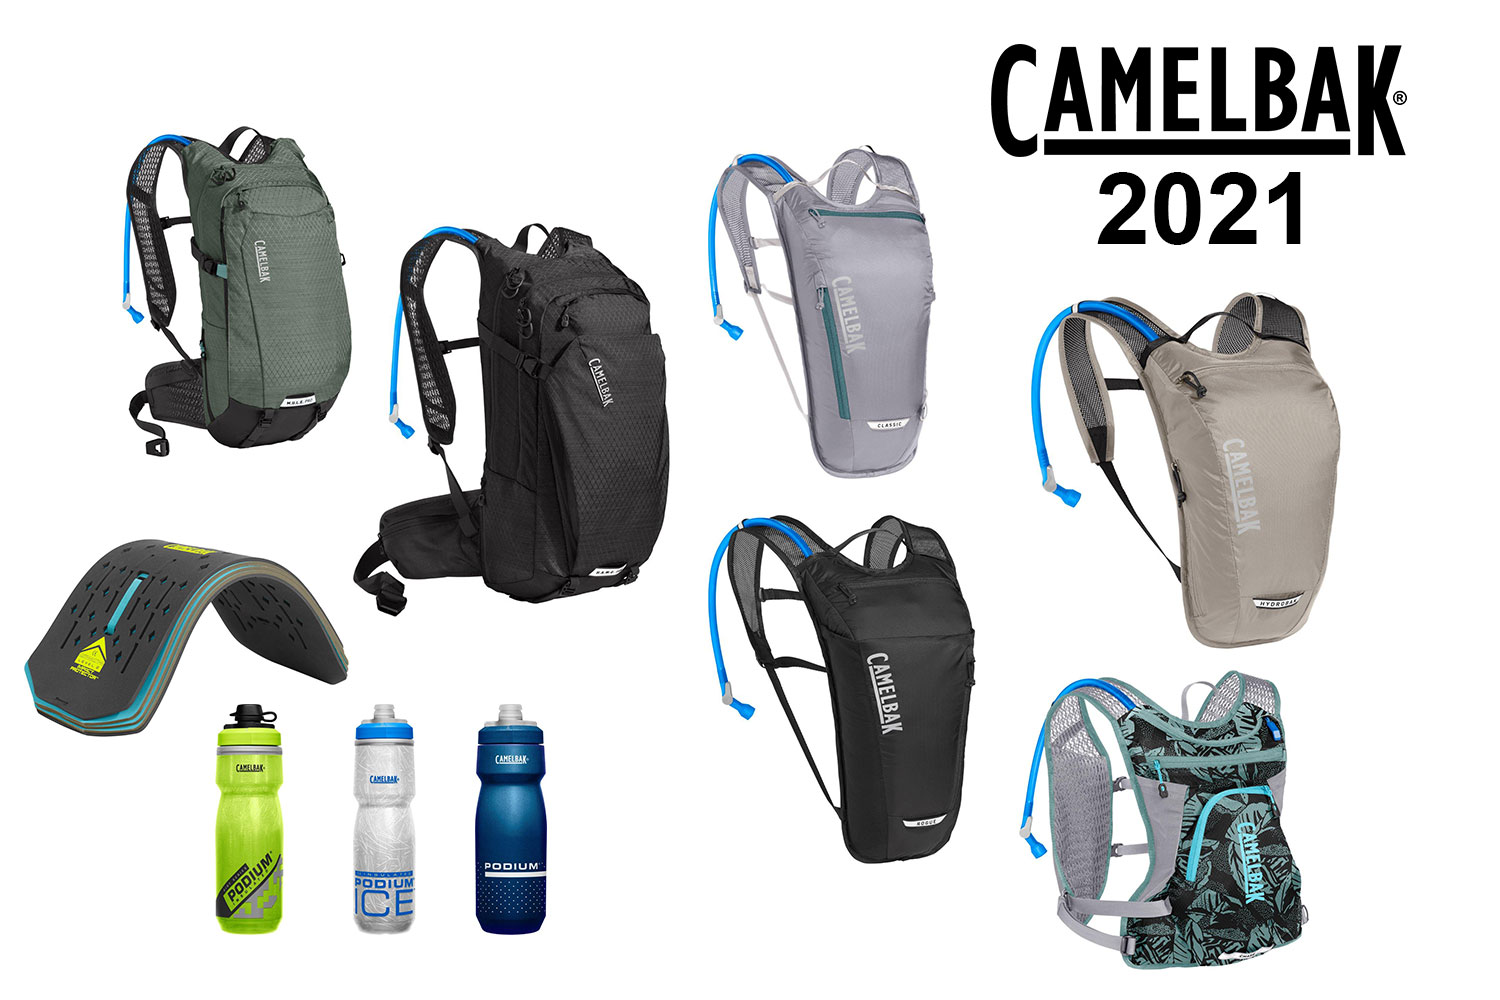 CamelBak 2021